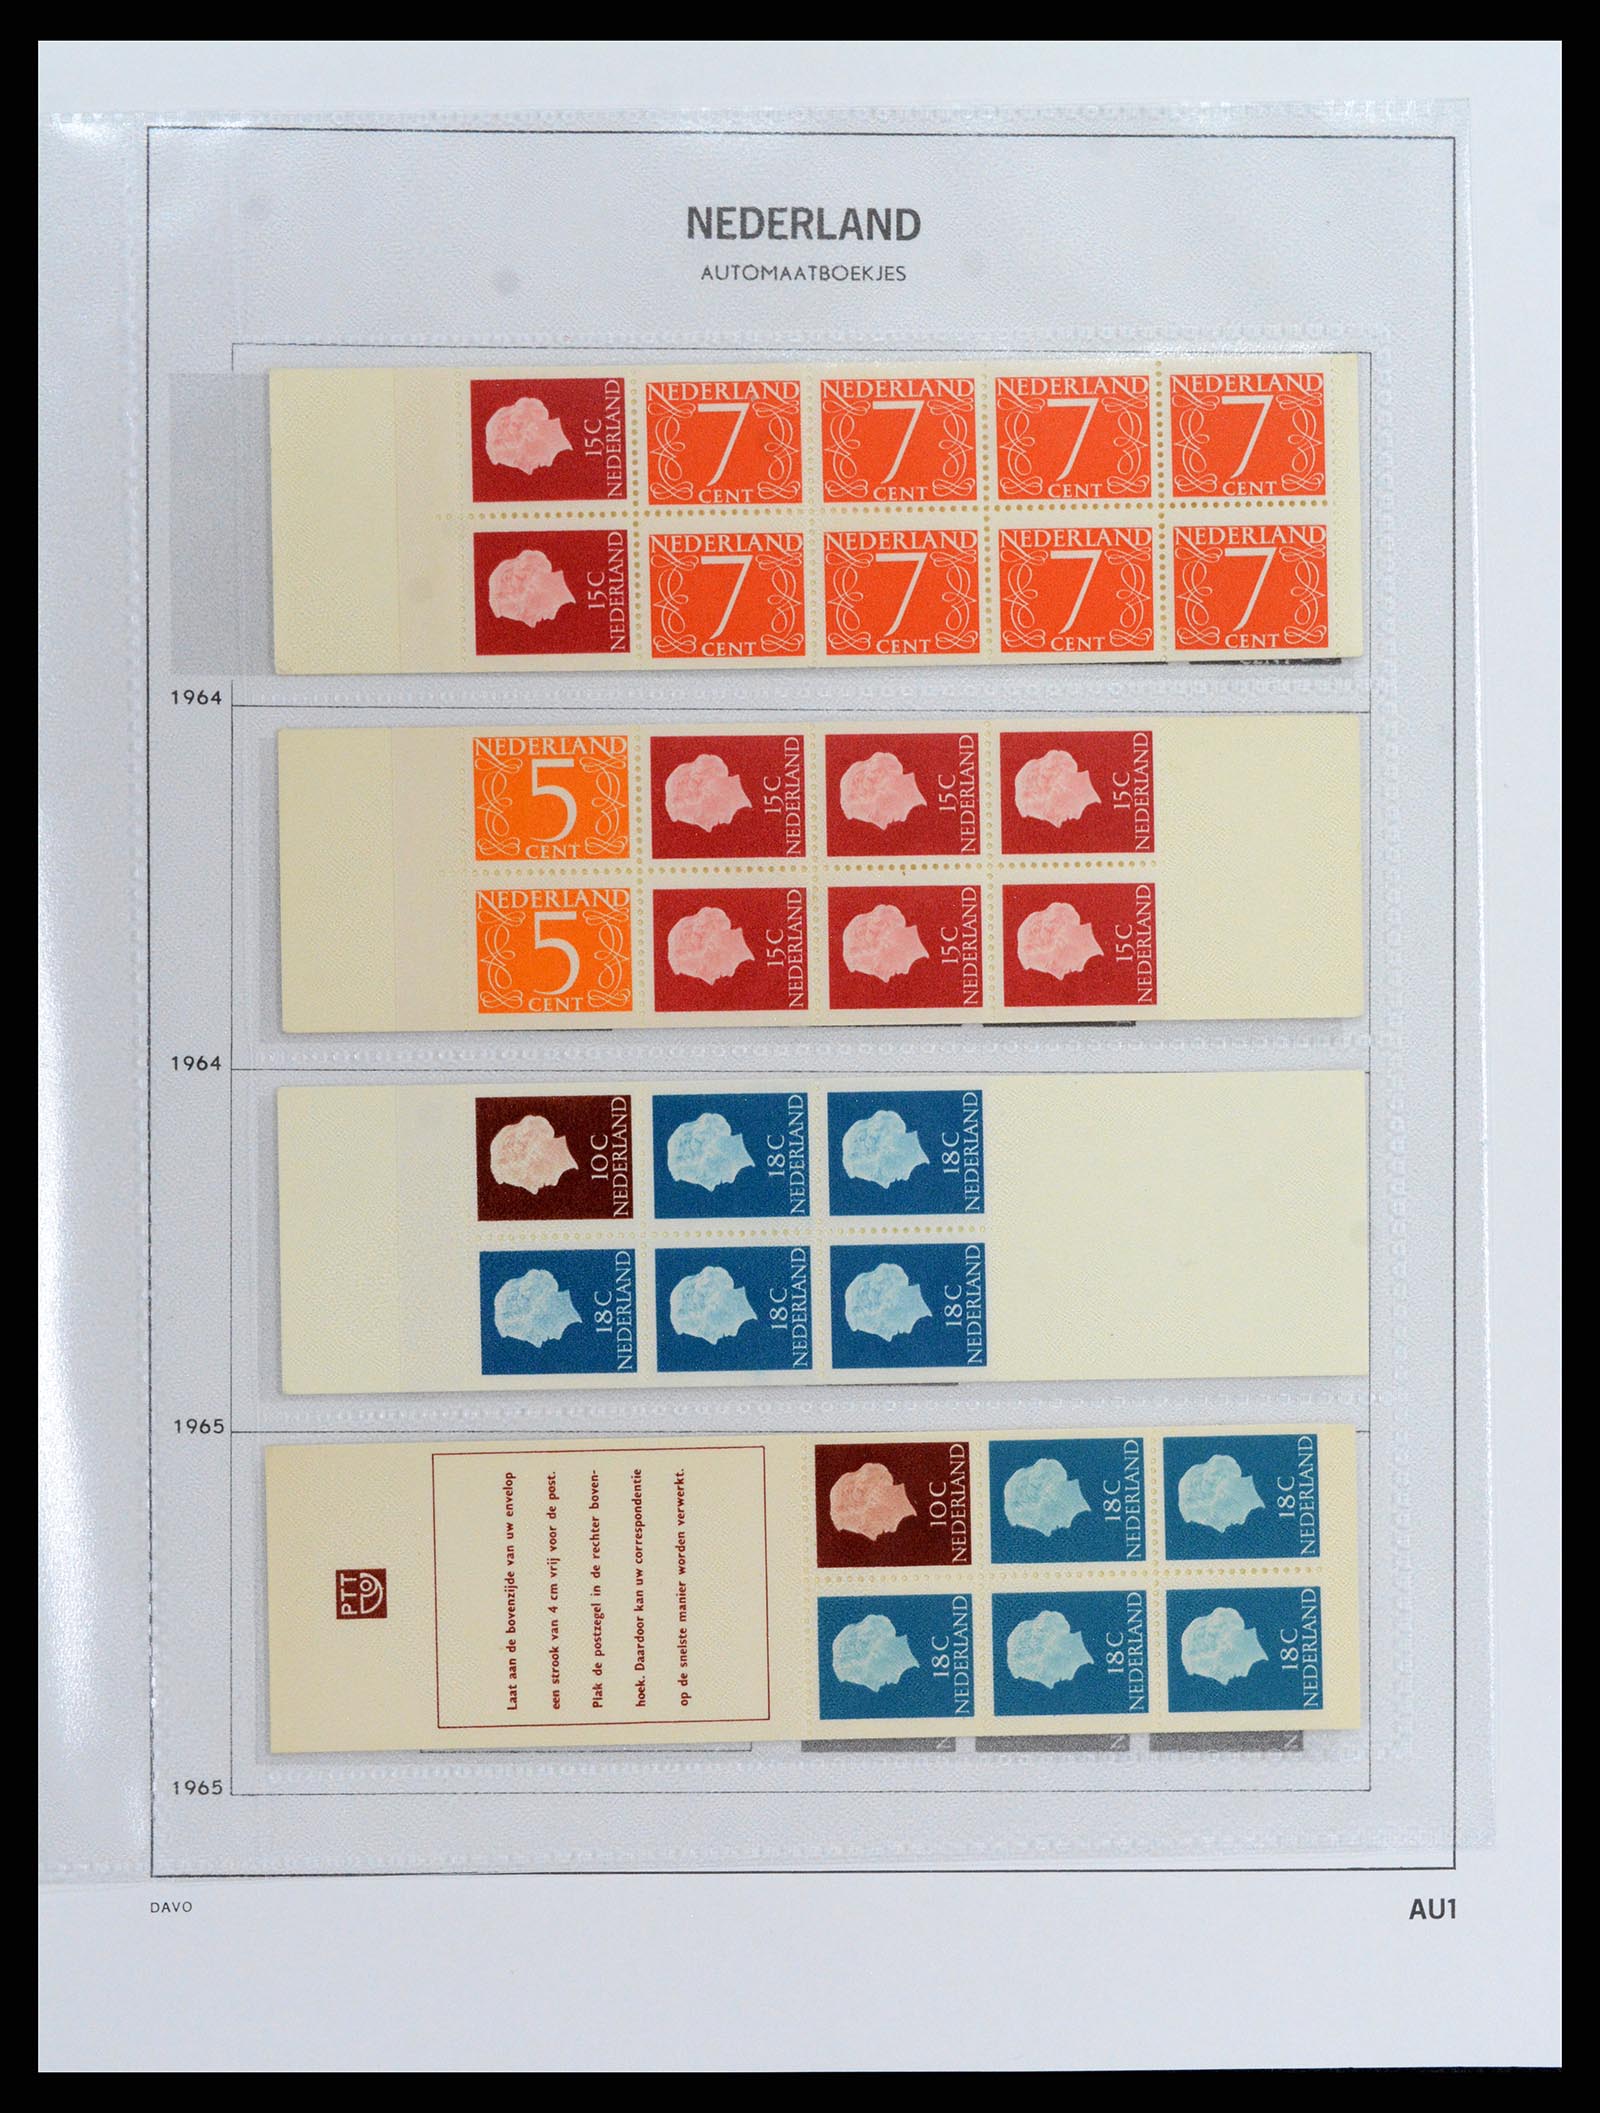 37871 001 - Stamp Collection 37871 Netherlands stampbooklets 1964-2000.